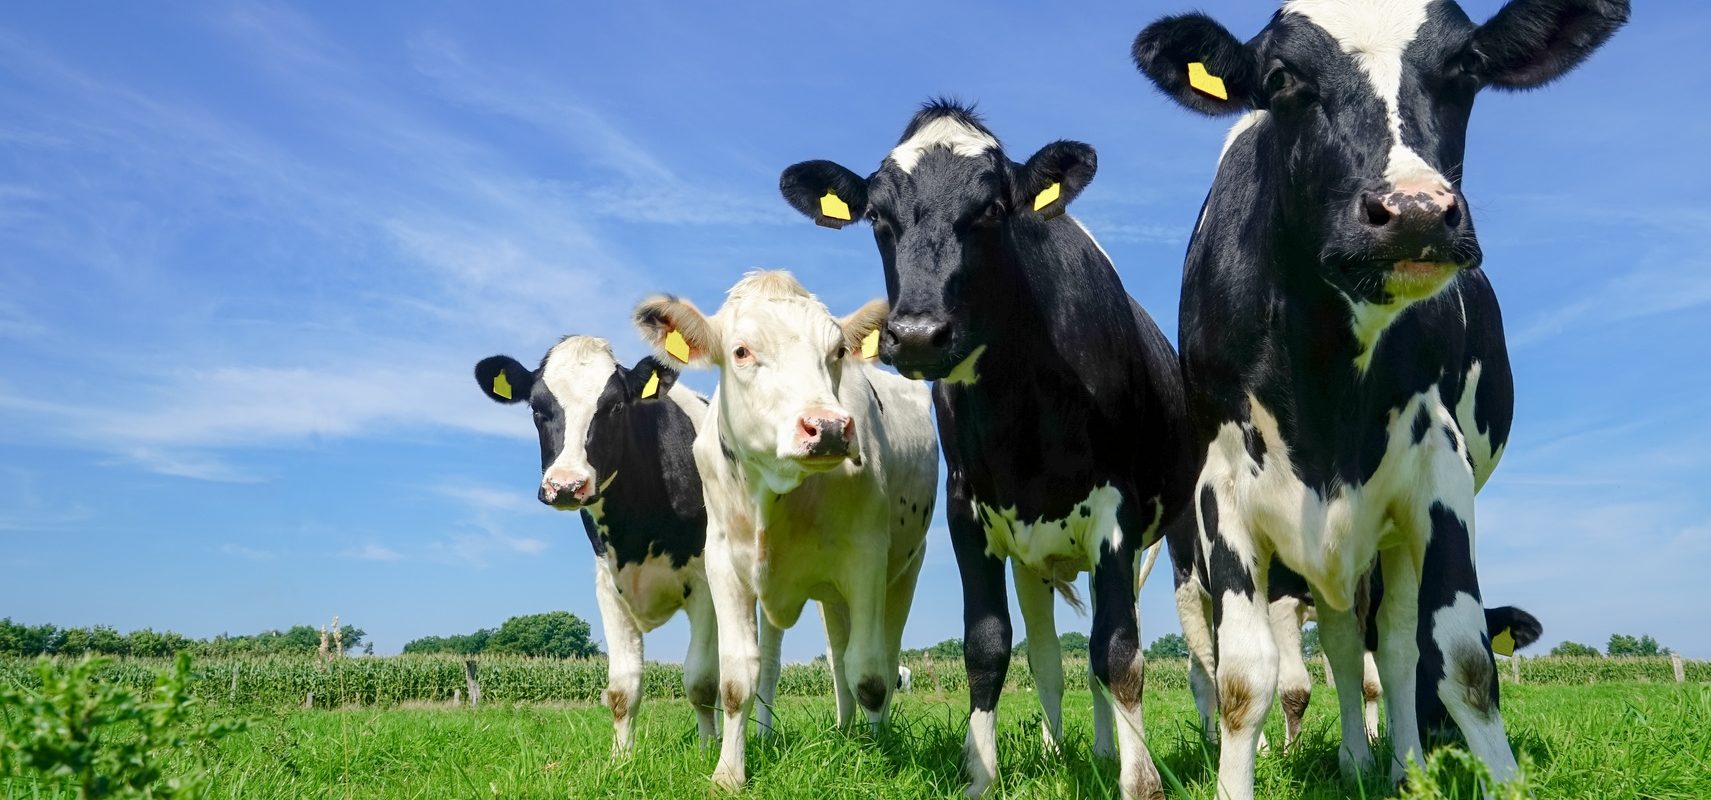 Jak bardzo jedzenie mięsa wpływa na naszą planetę? Krowy pasą się na pastwisku.